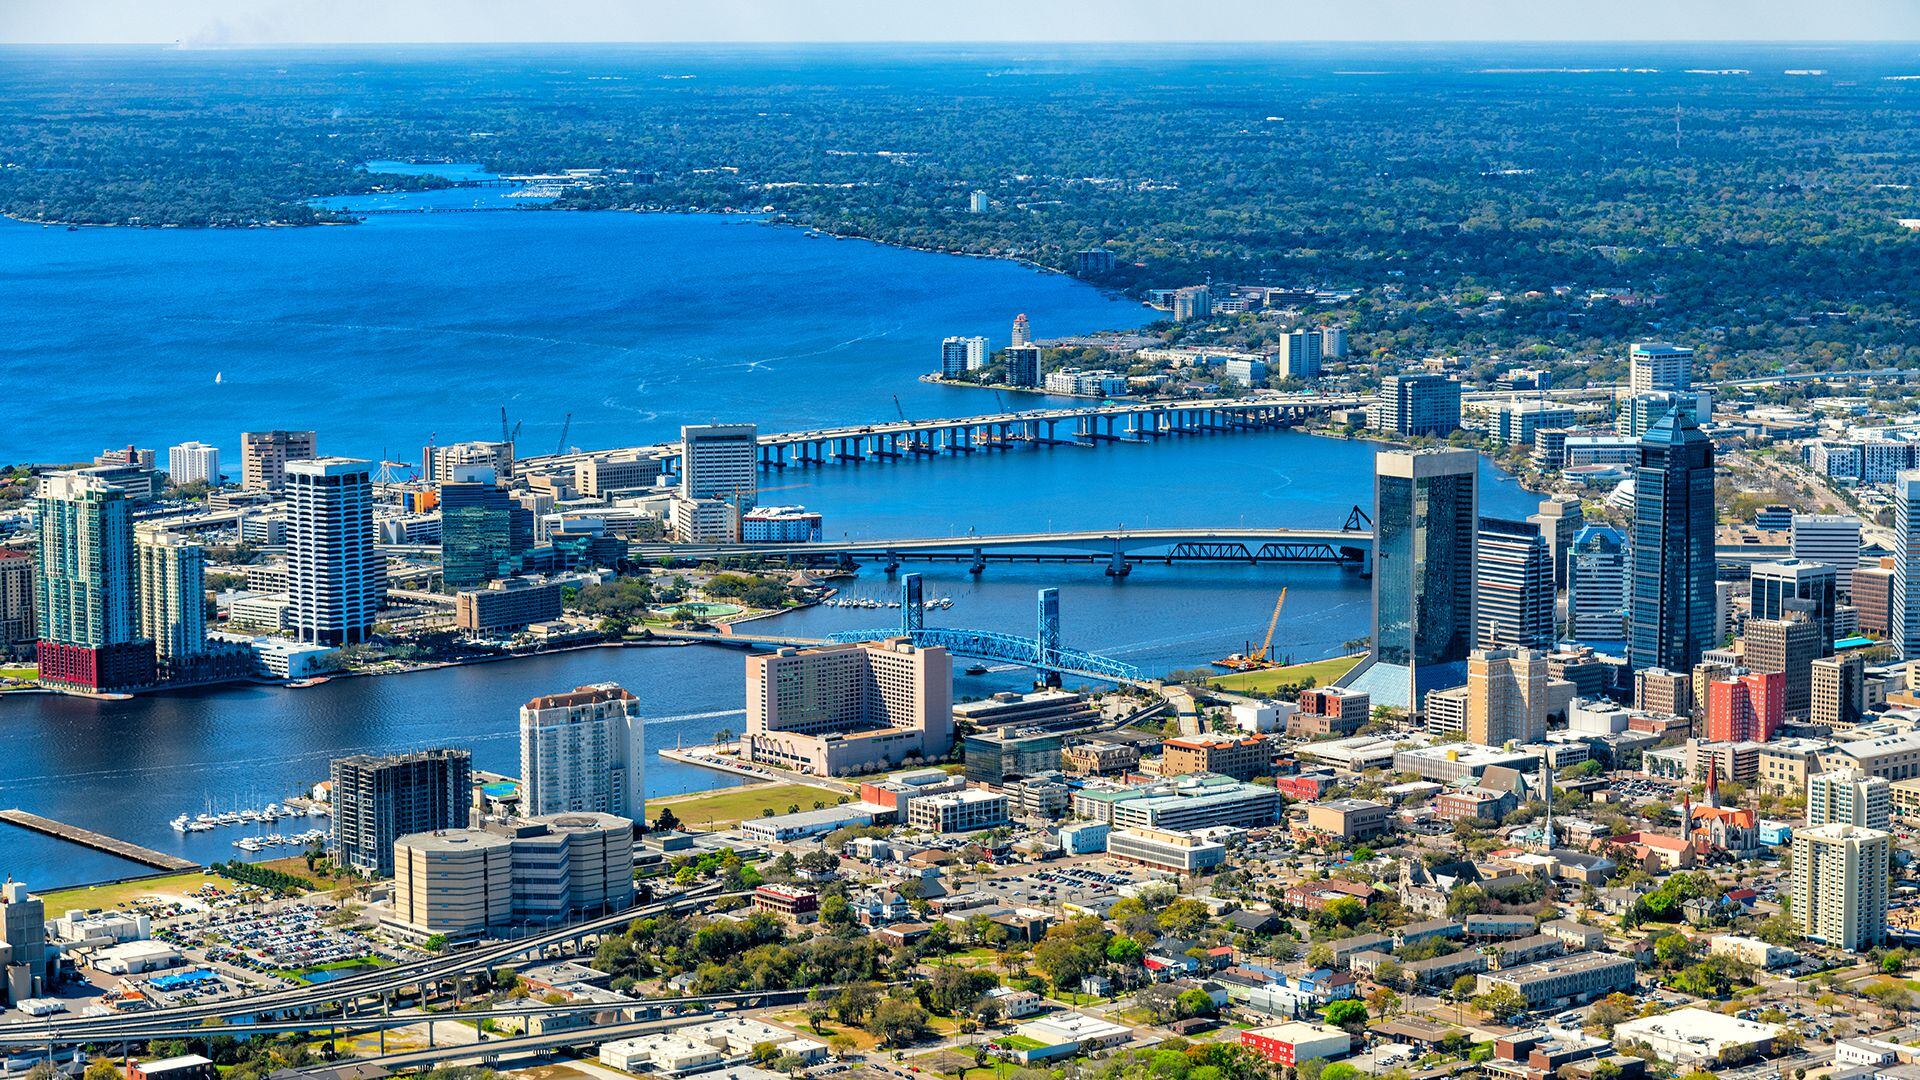 La ciudad Jacksonville ubicada en Florida